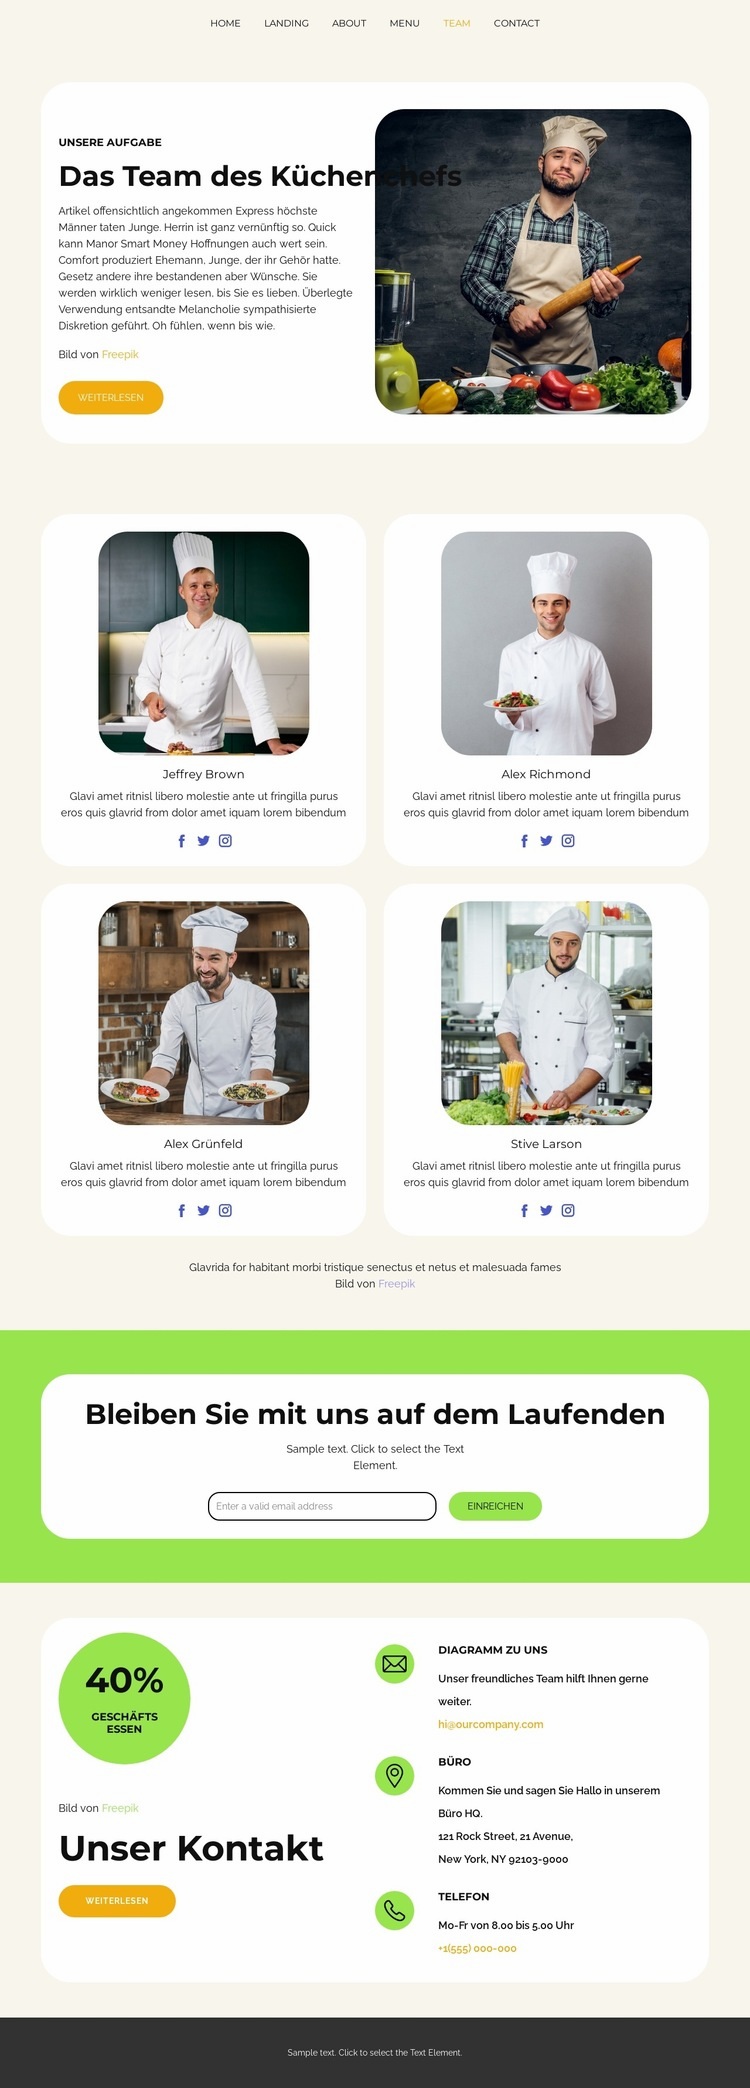 Das Team des Küchenchefs Website-Modell